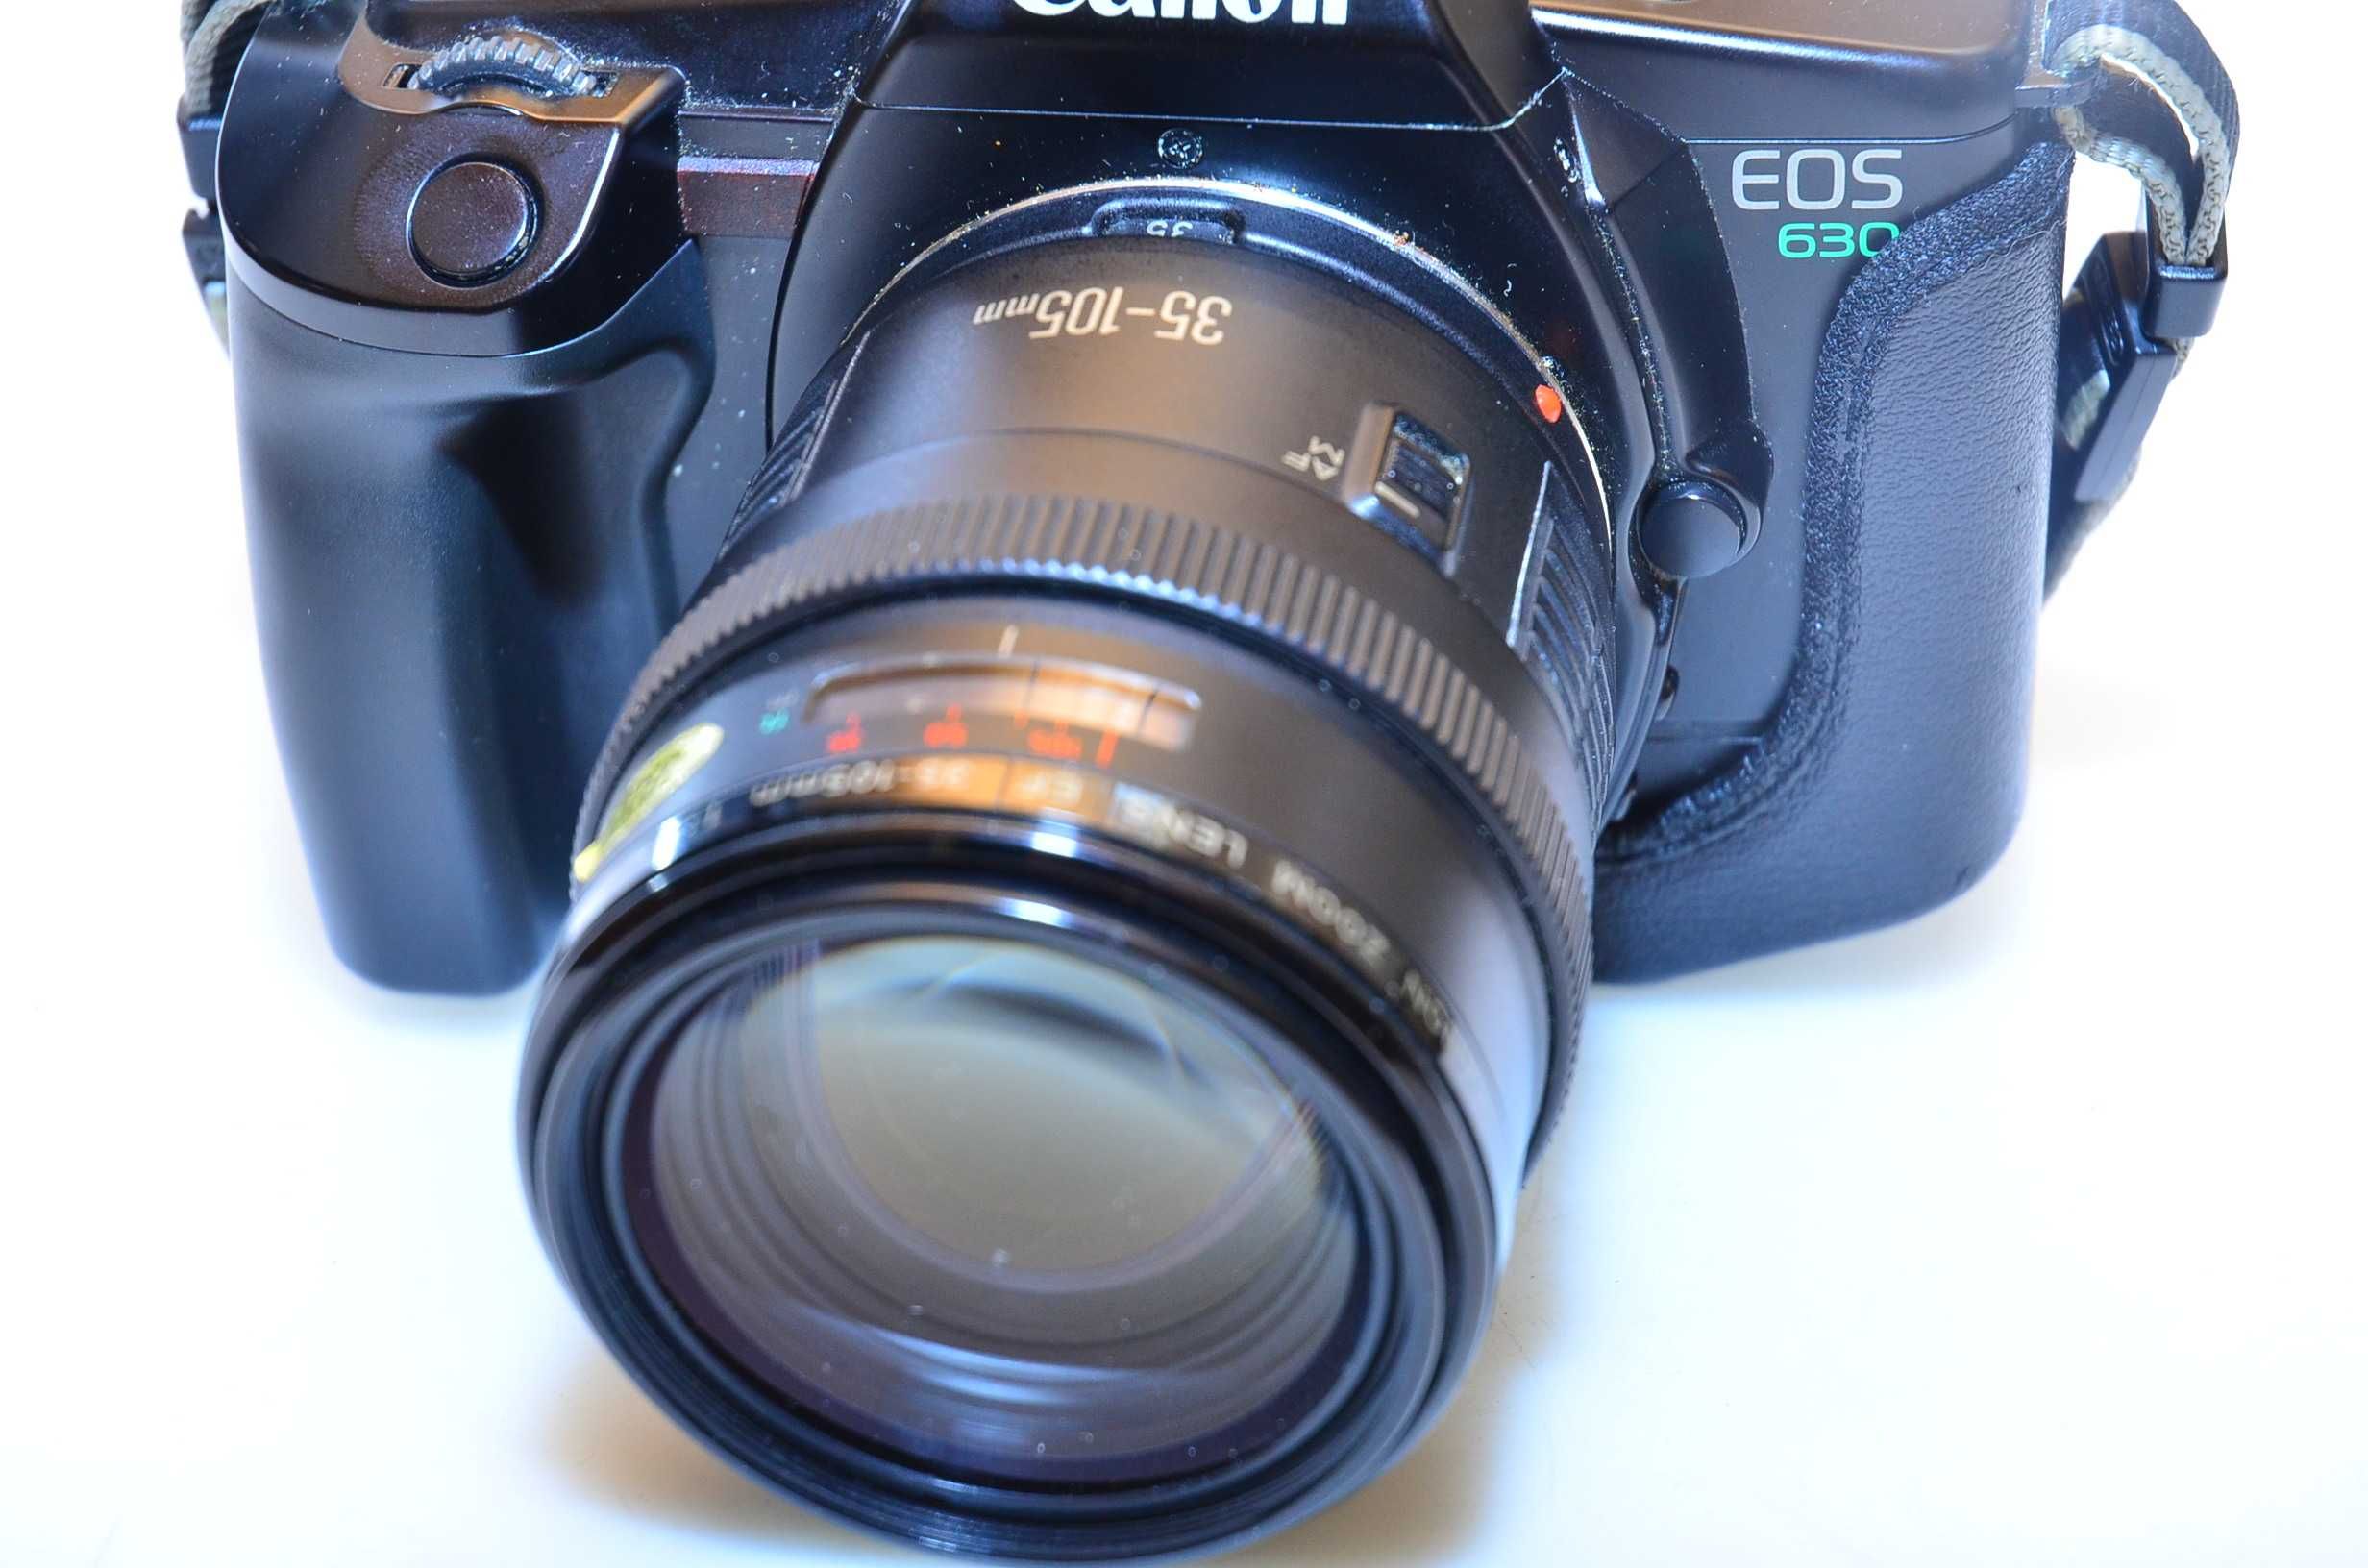 Aparat Canon EOS 630 + obiektyw 35-105 f3,5-4,5